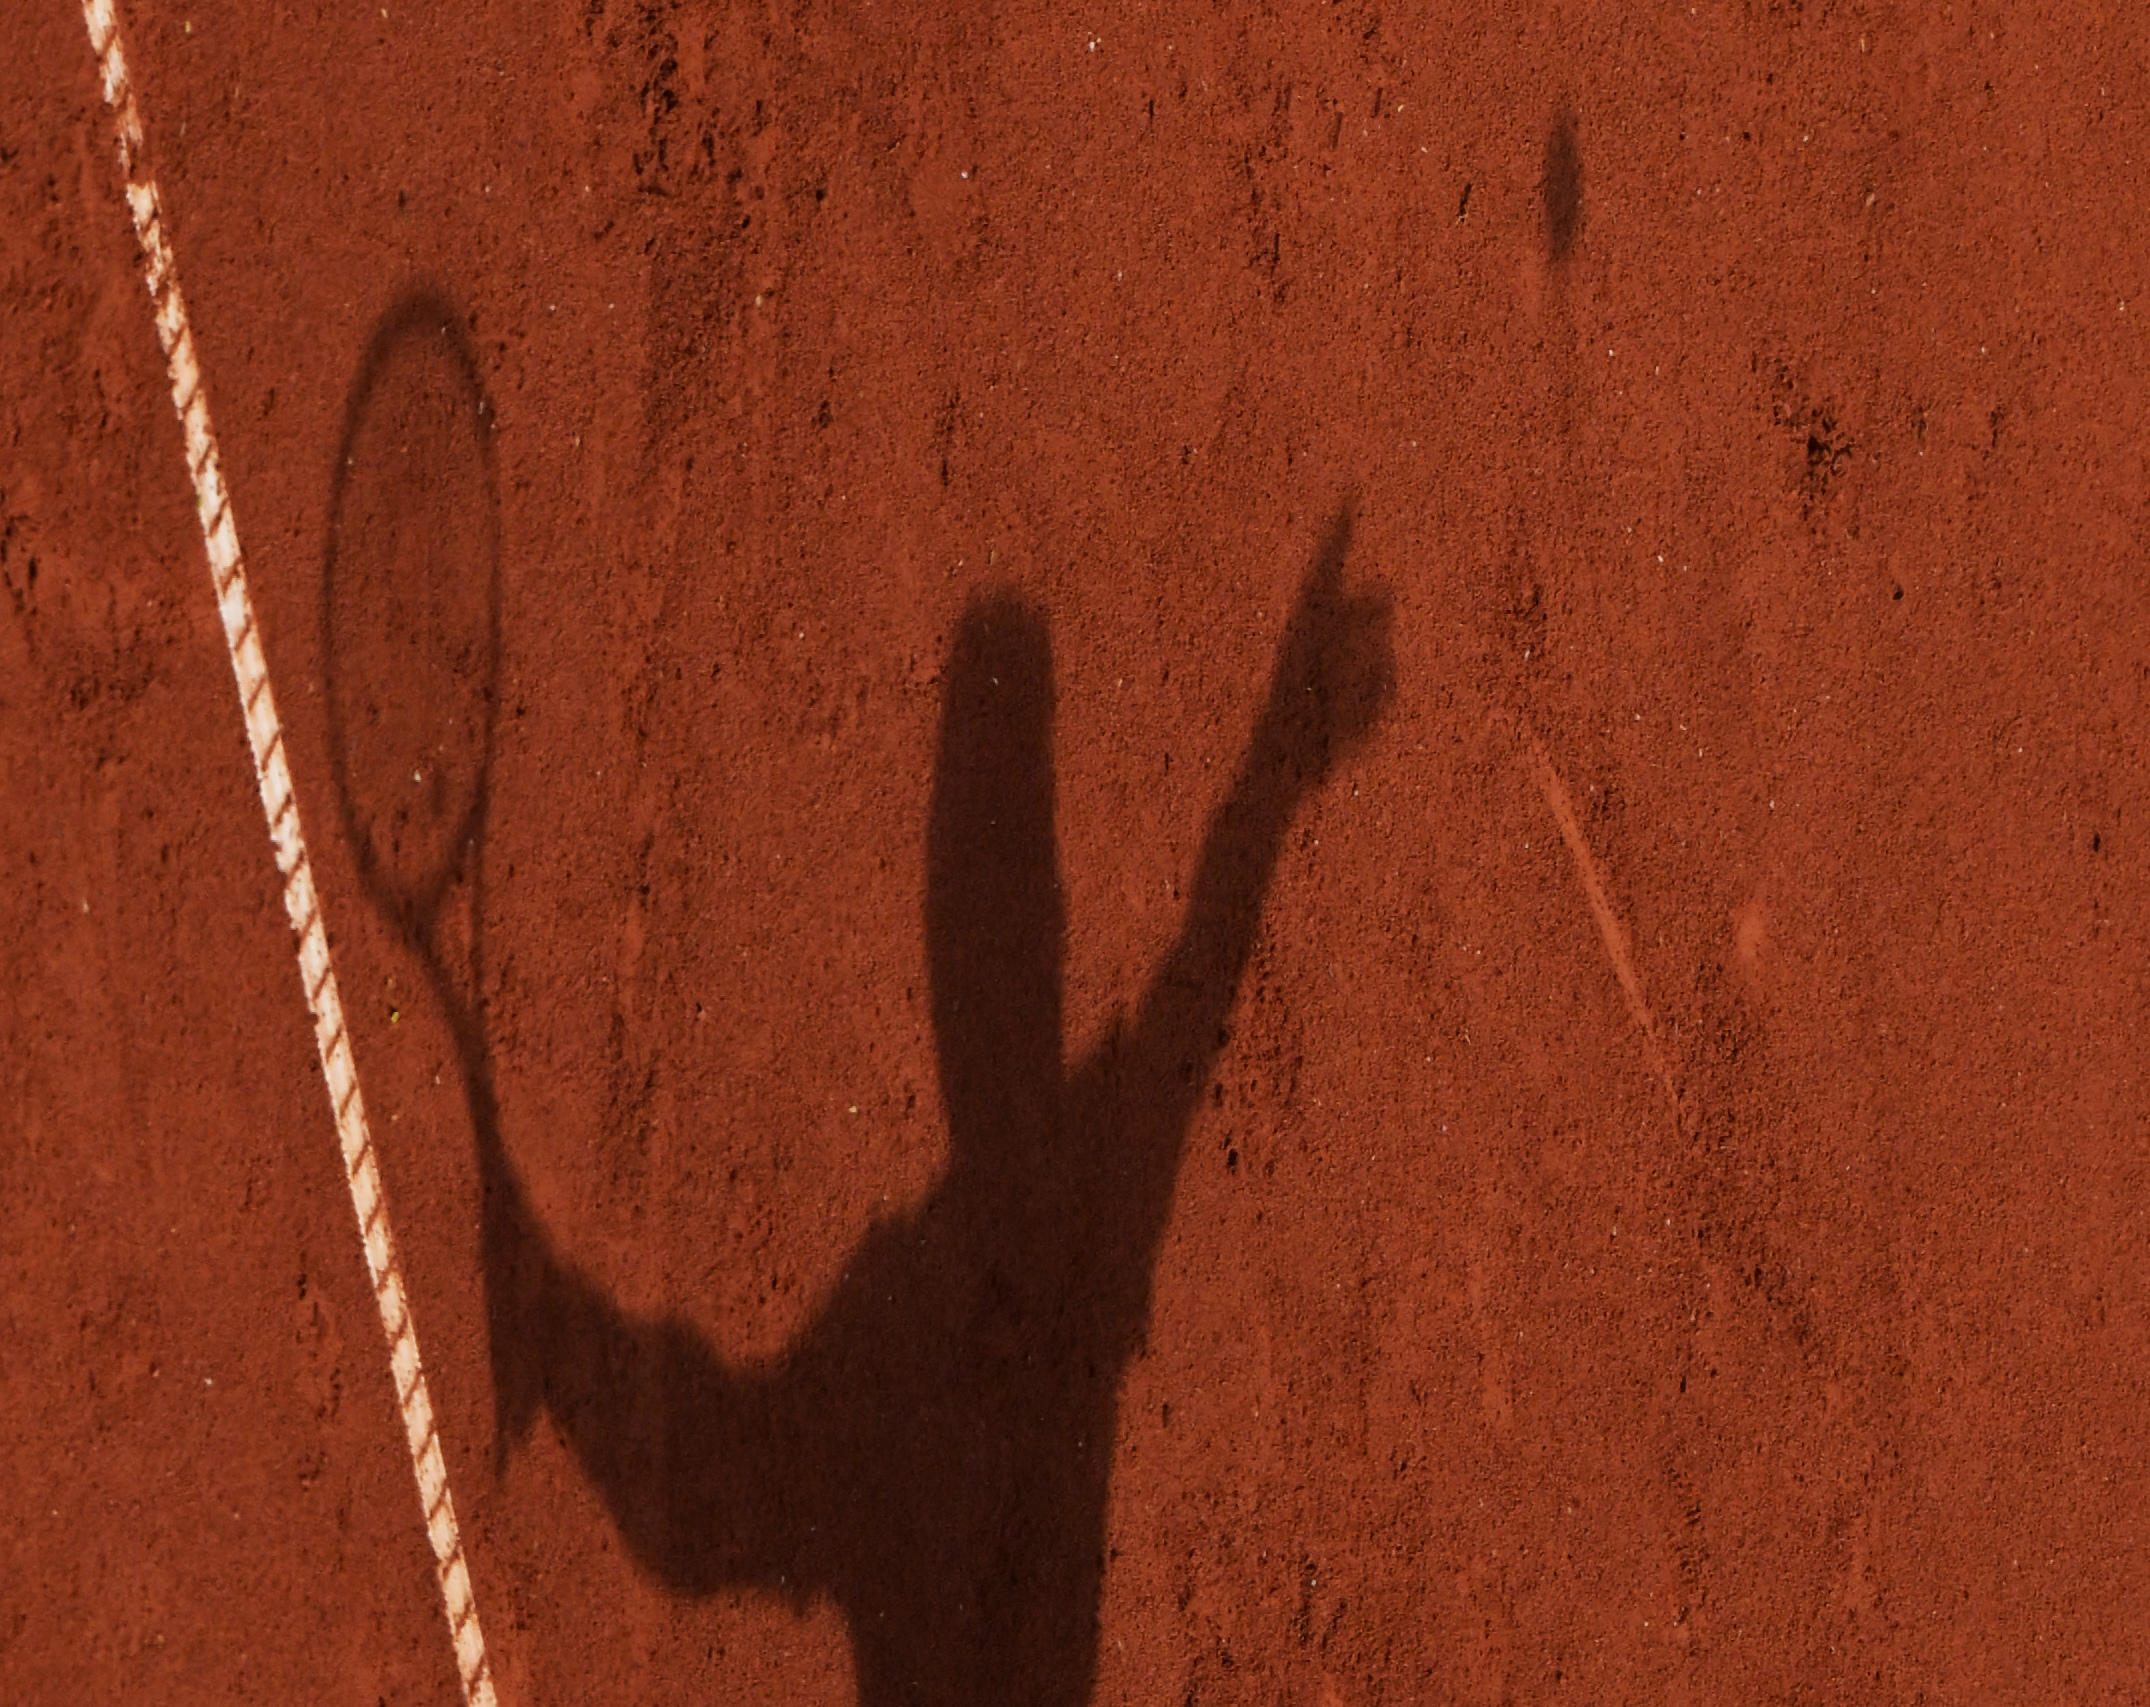 Le tennis, sport numéro un chez les Parisiens. (Illustration) Icon Sport